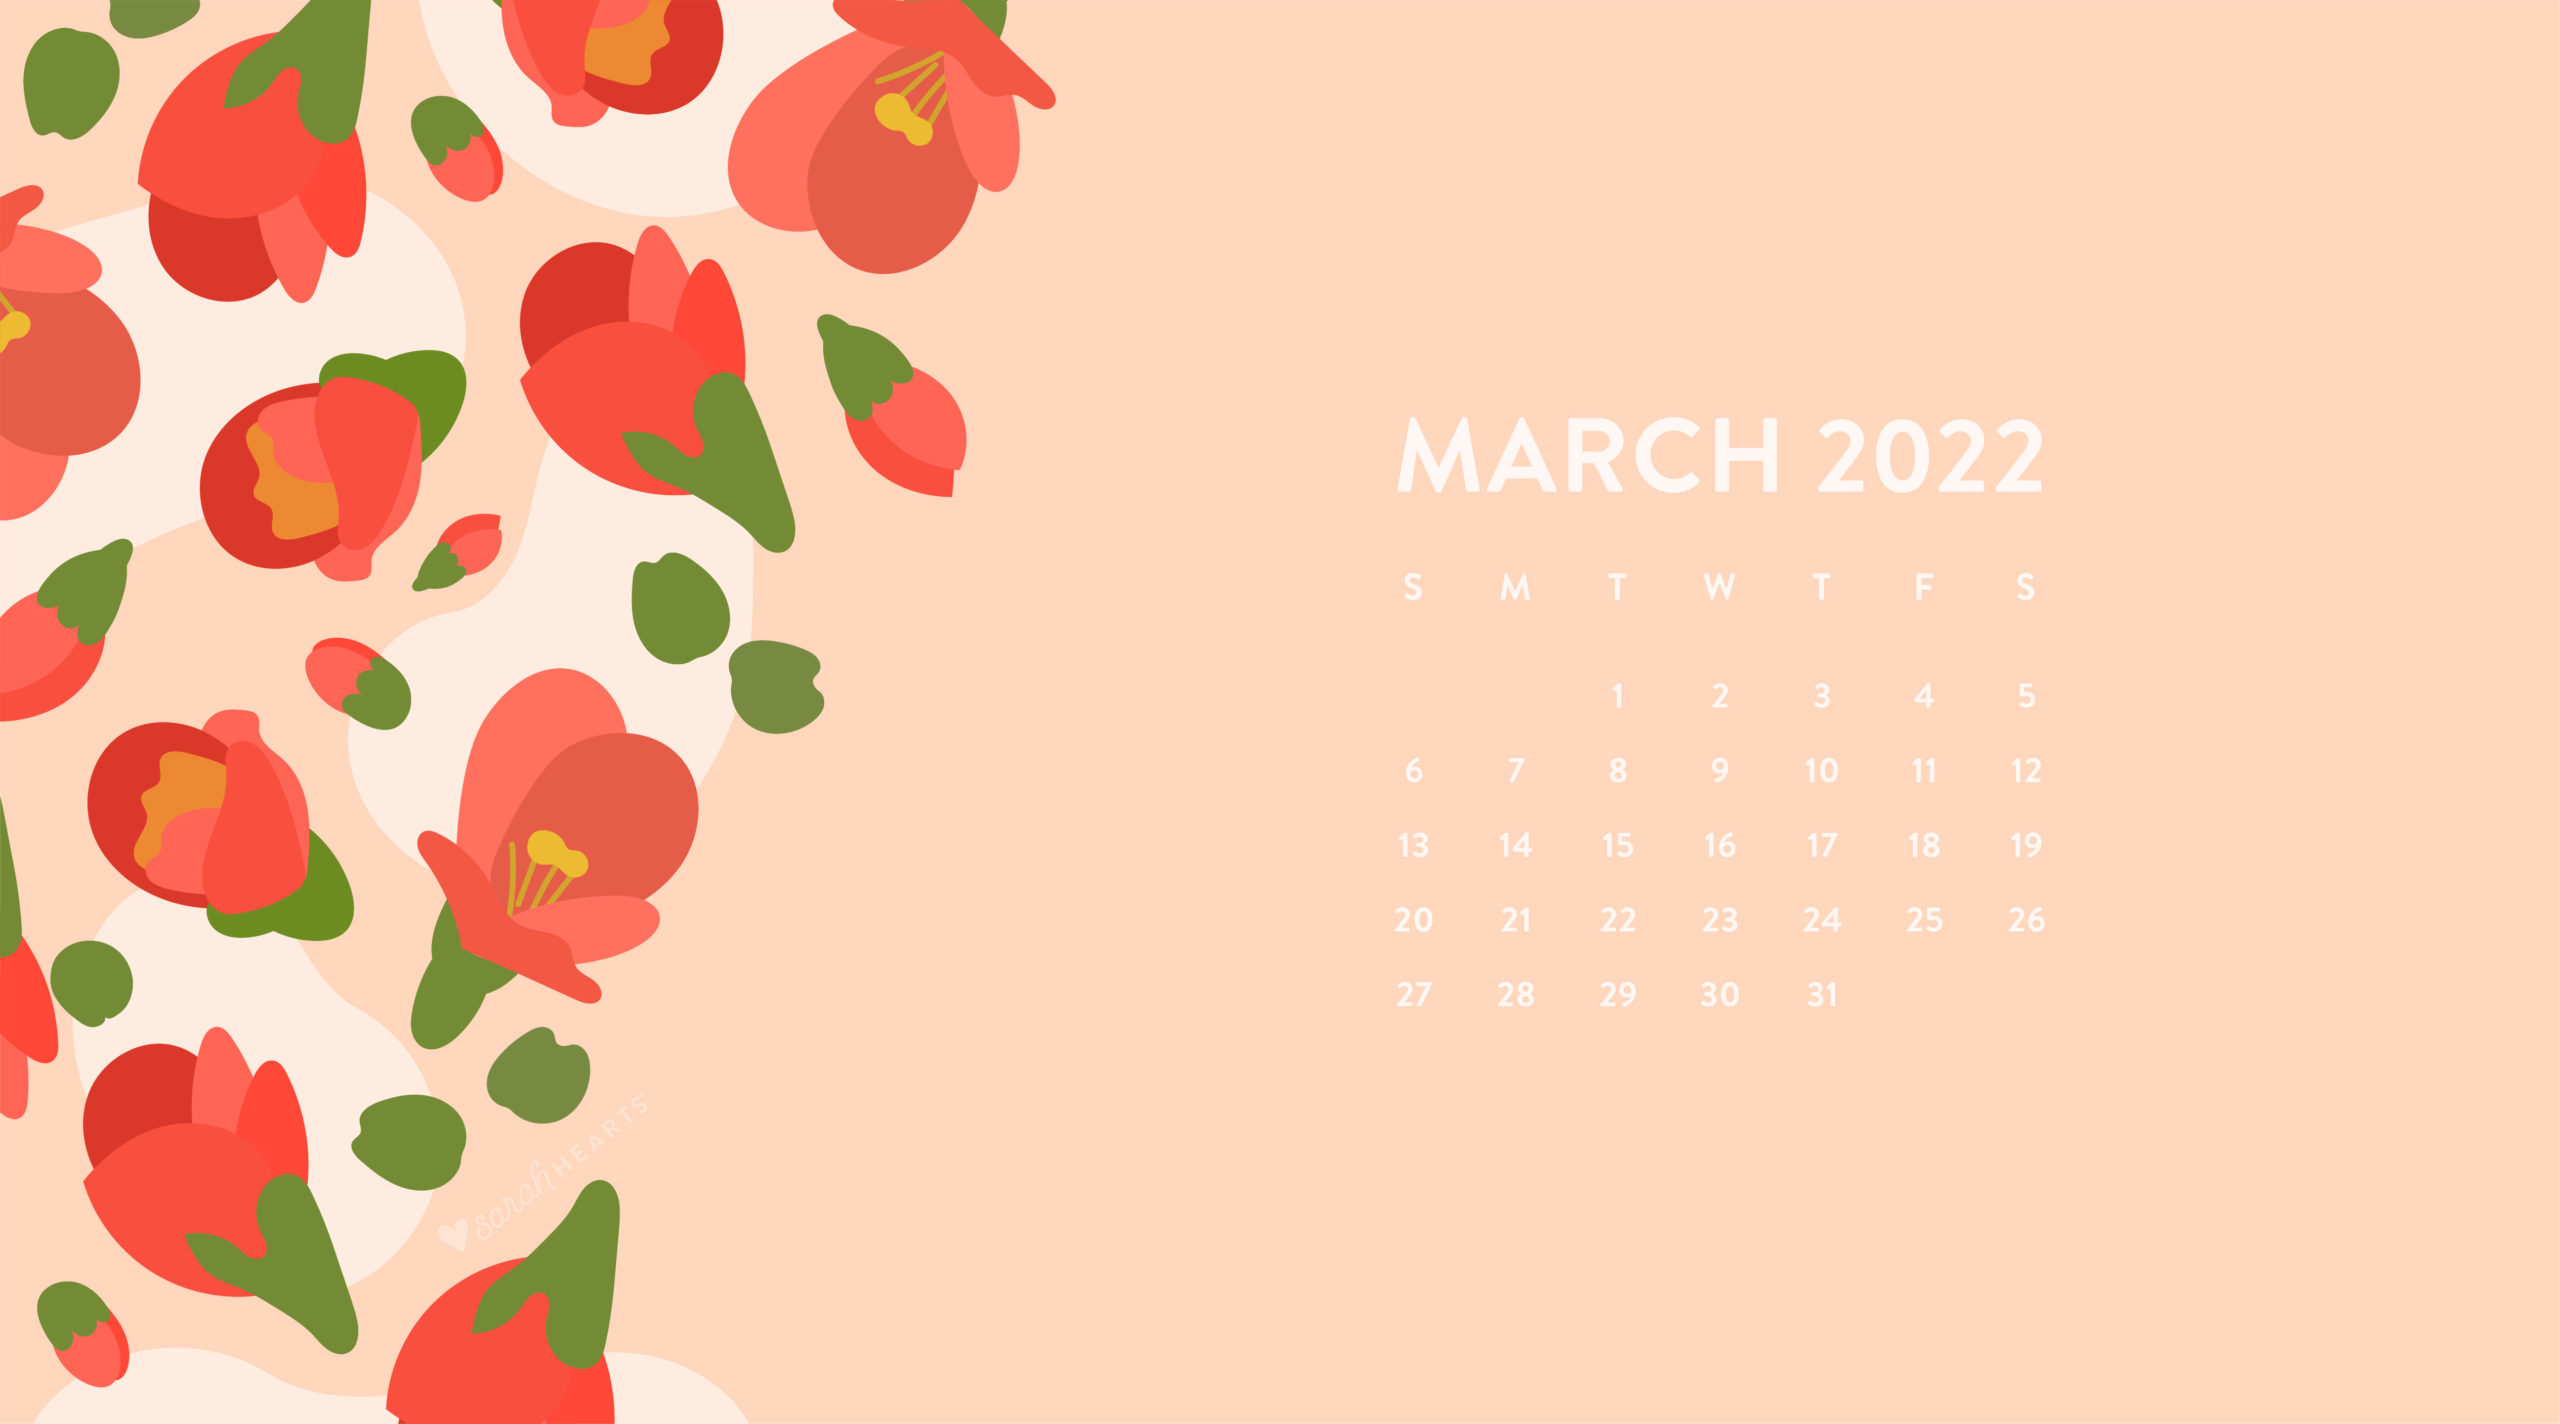 March 2022 Desktop Calendar March 2022 Calendar Wallpaper - Sarah Hearts